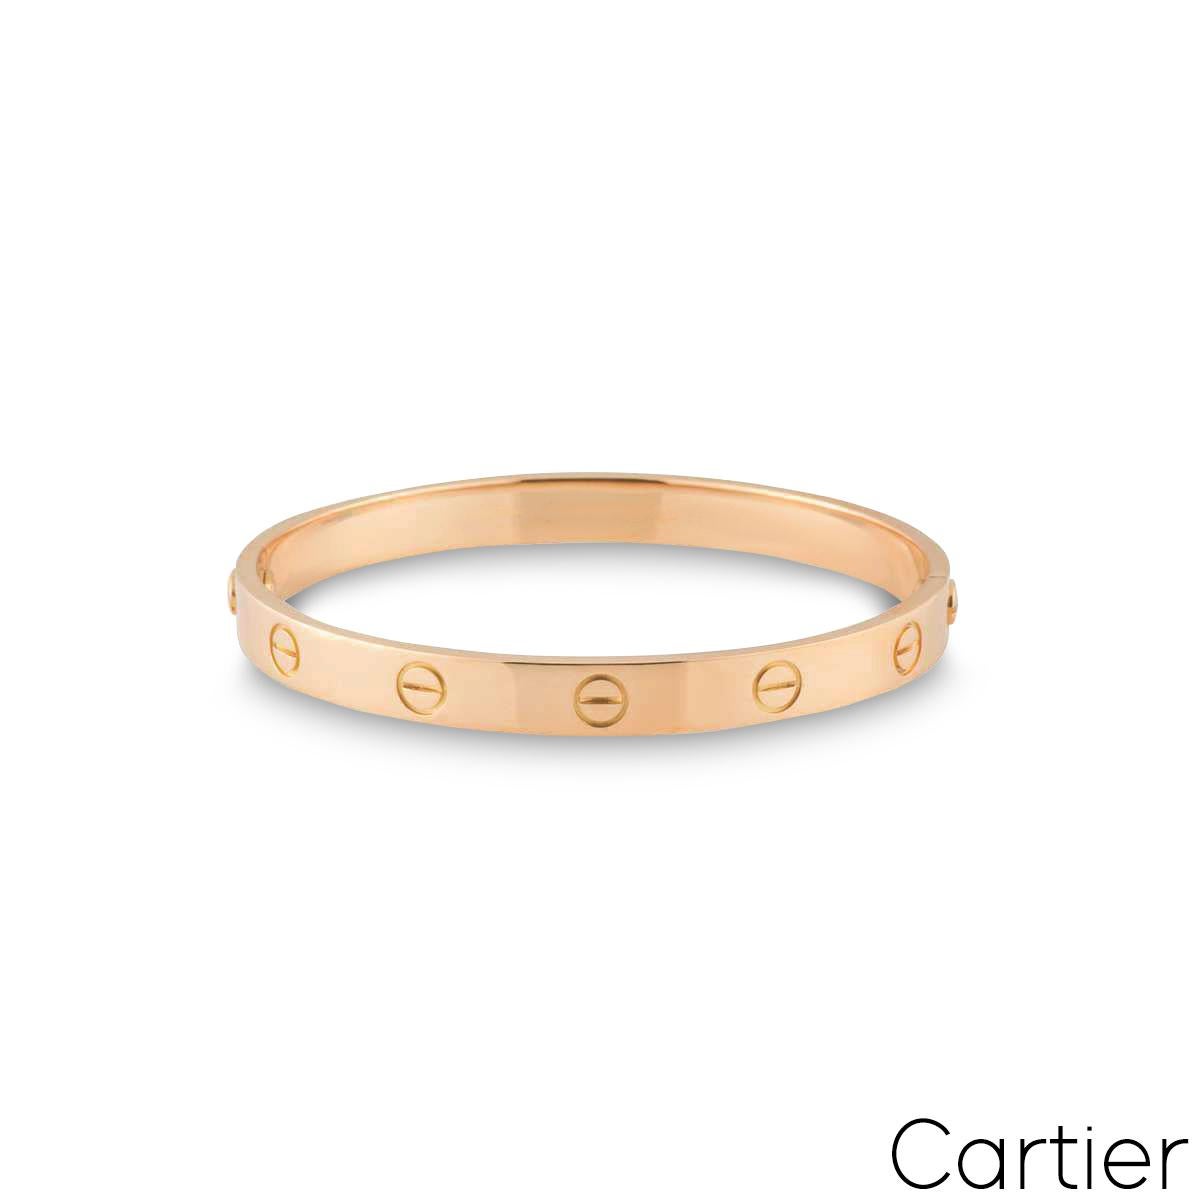 Ein ikonisches Cartier-Armband aus 18 Karat Roségold aus der Collection'S Love. Das Armband besteht aus den ikonischen Schraubenmotiven am äußeren Rand. Dieses Armband der Größe 20 mit dem alten Schraubensystem hat ein Bruttogewicht von 35,50